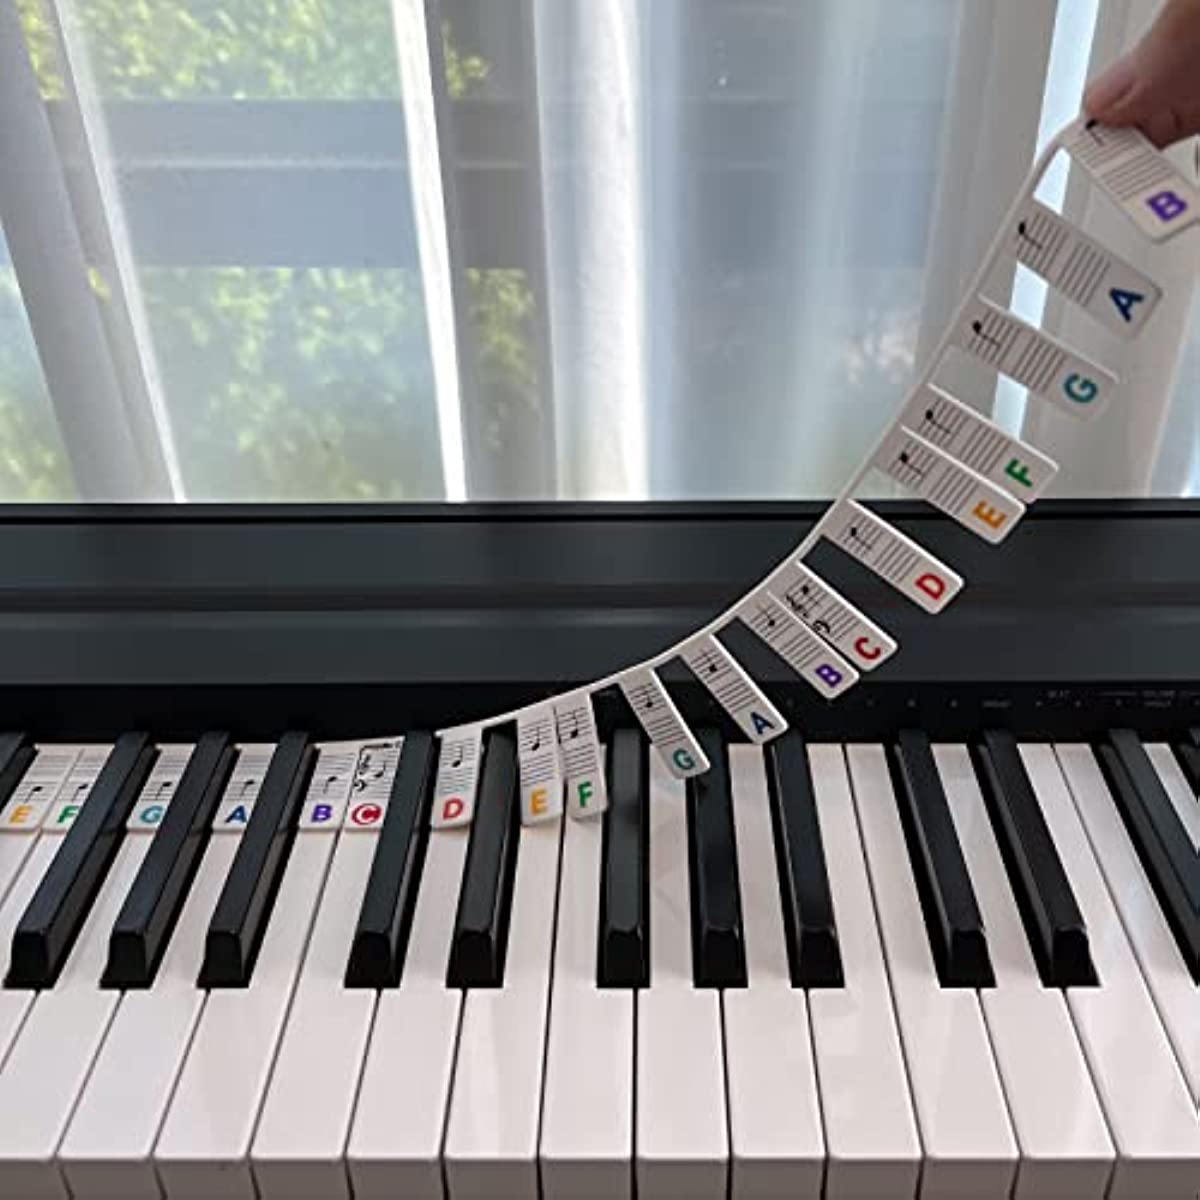 Keyboard Notes - Piano Notes